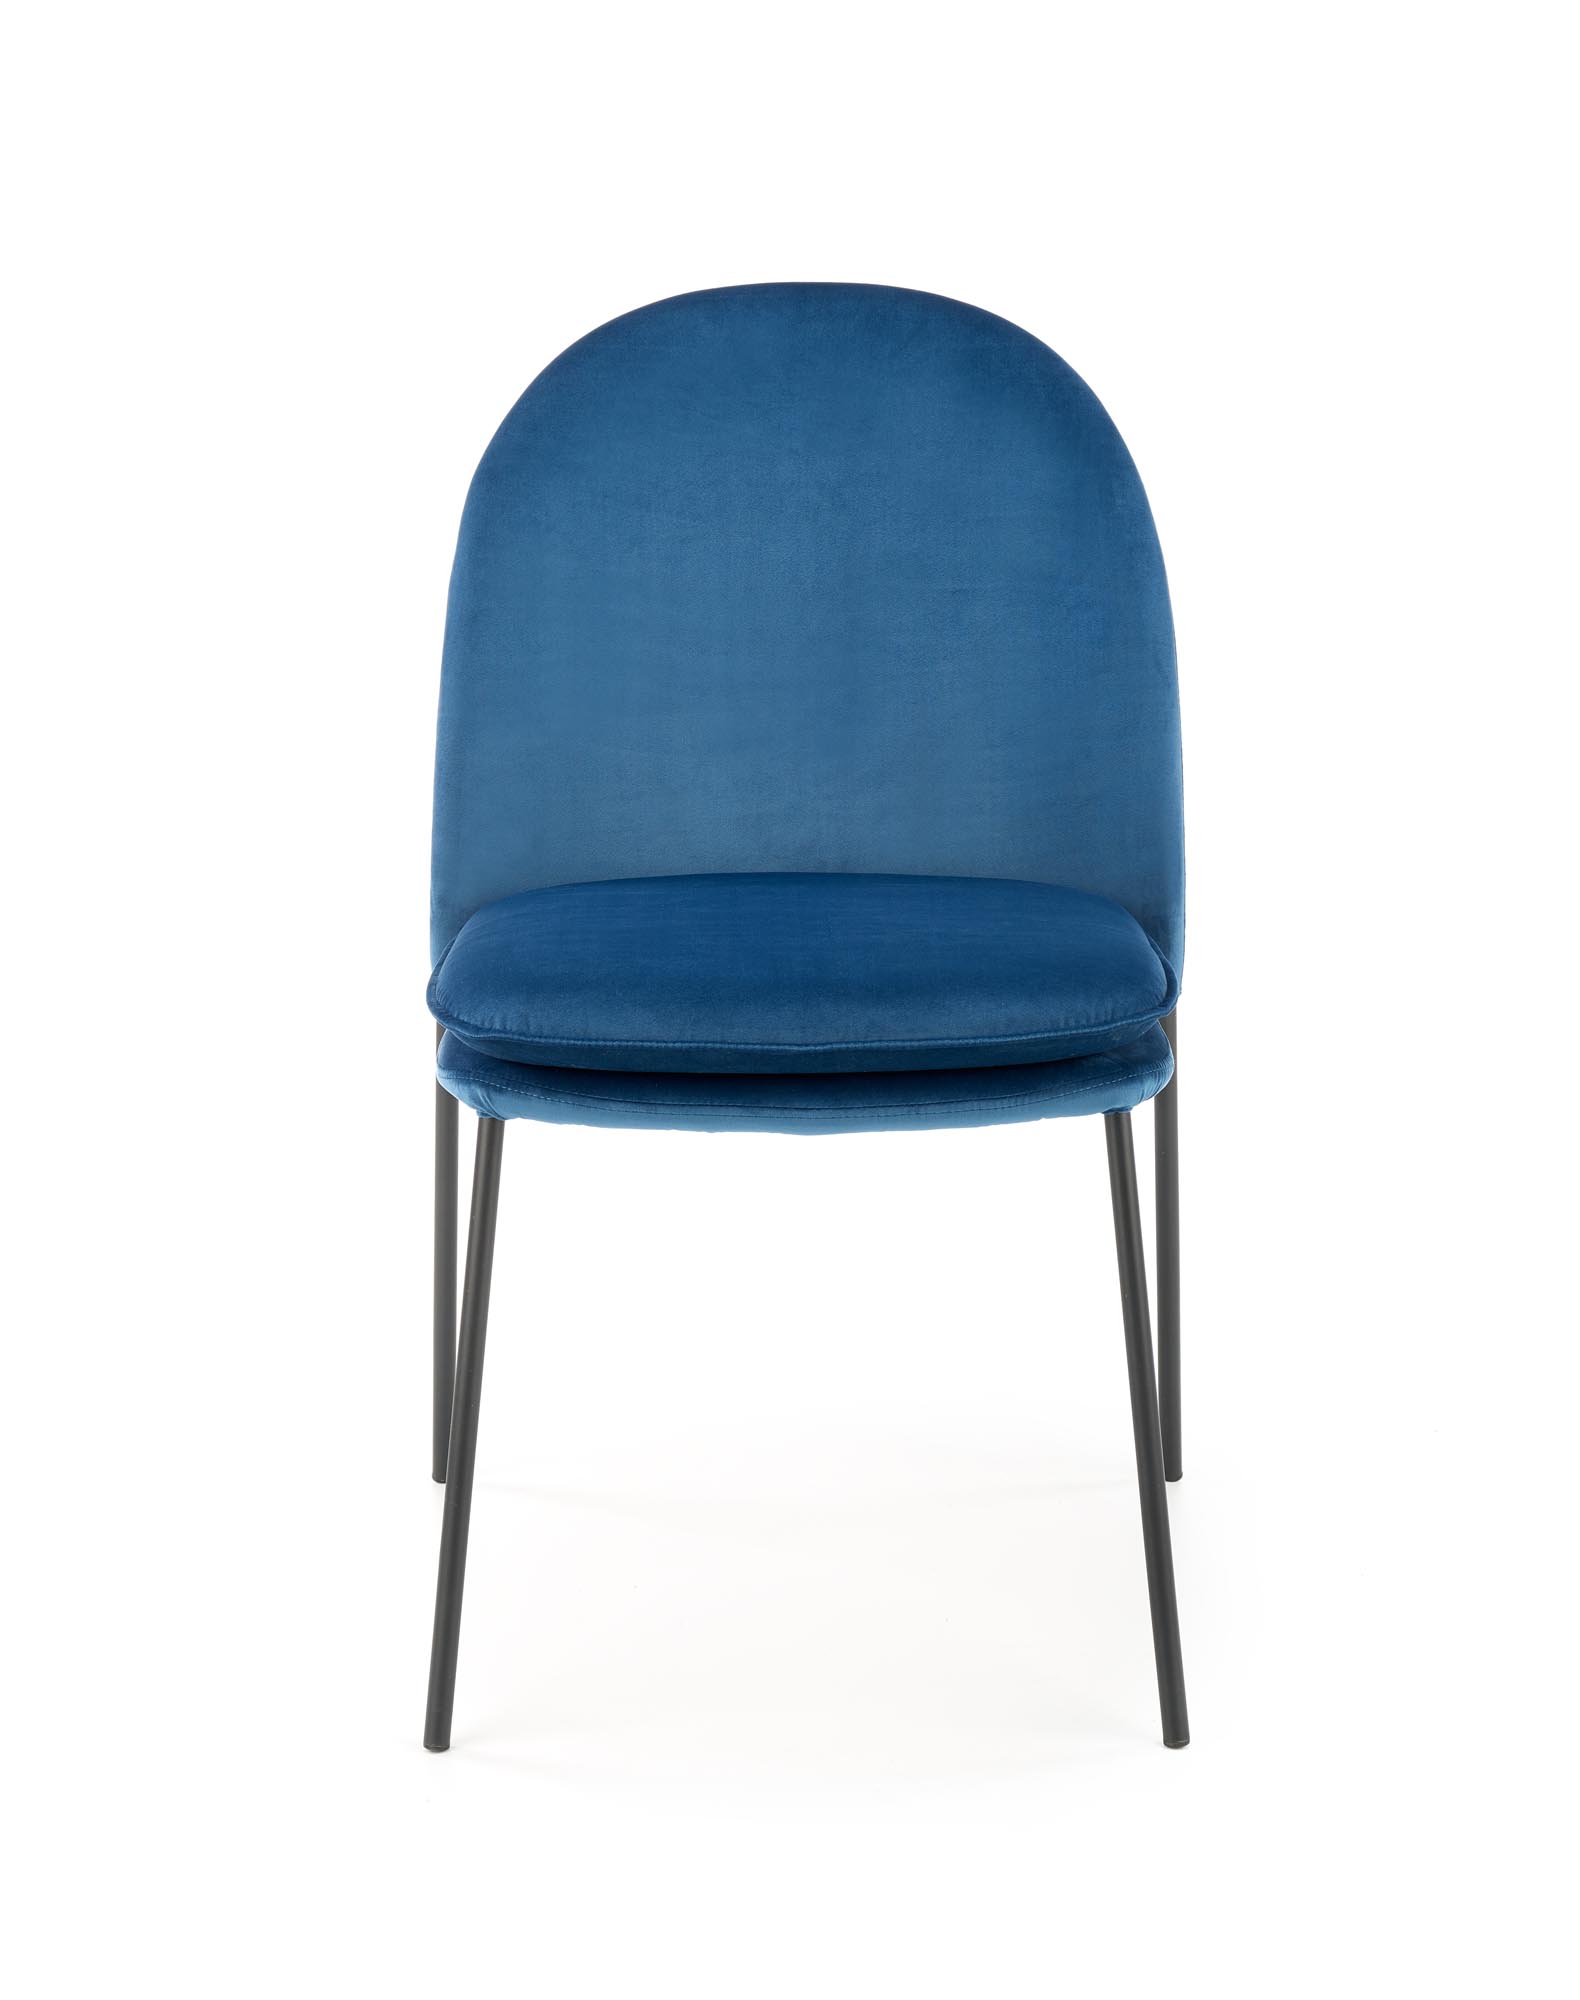 K443 stolica, boja: tamno plava